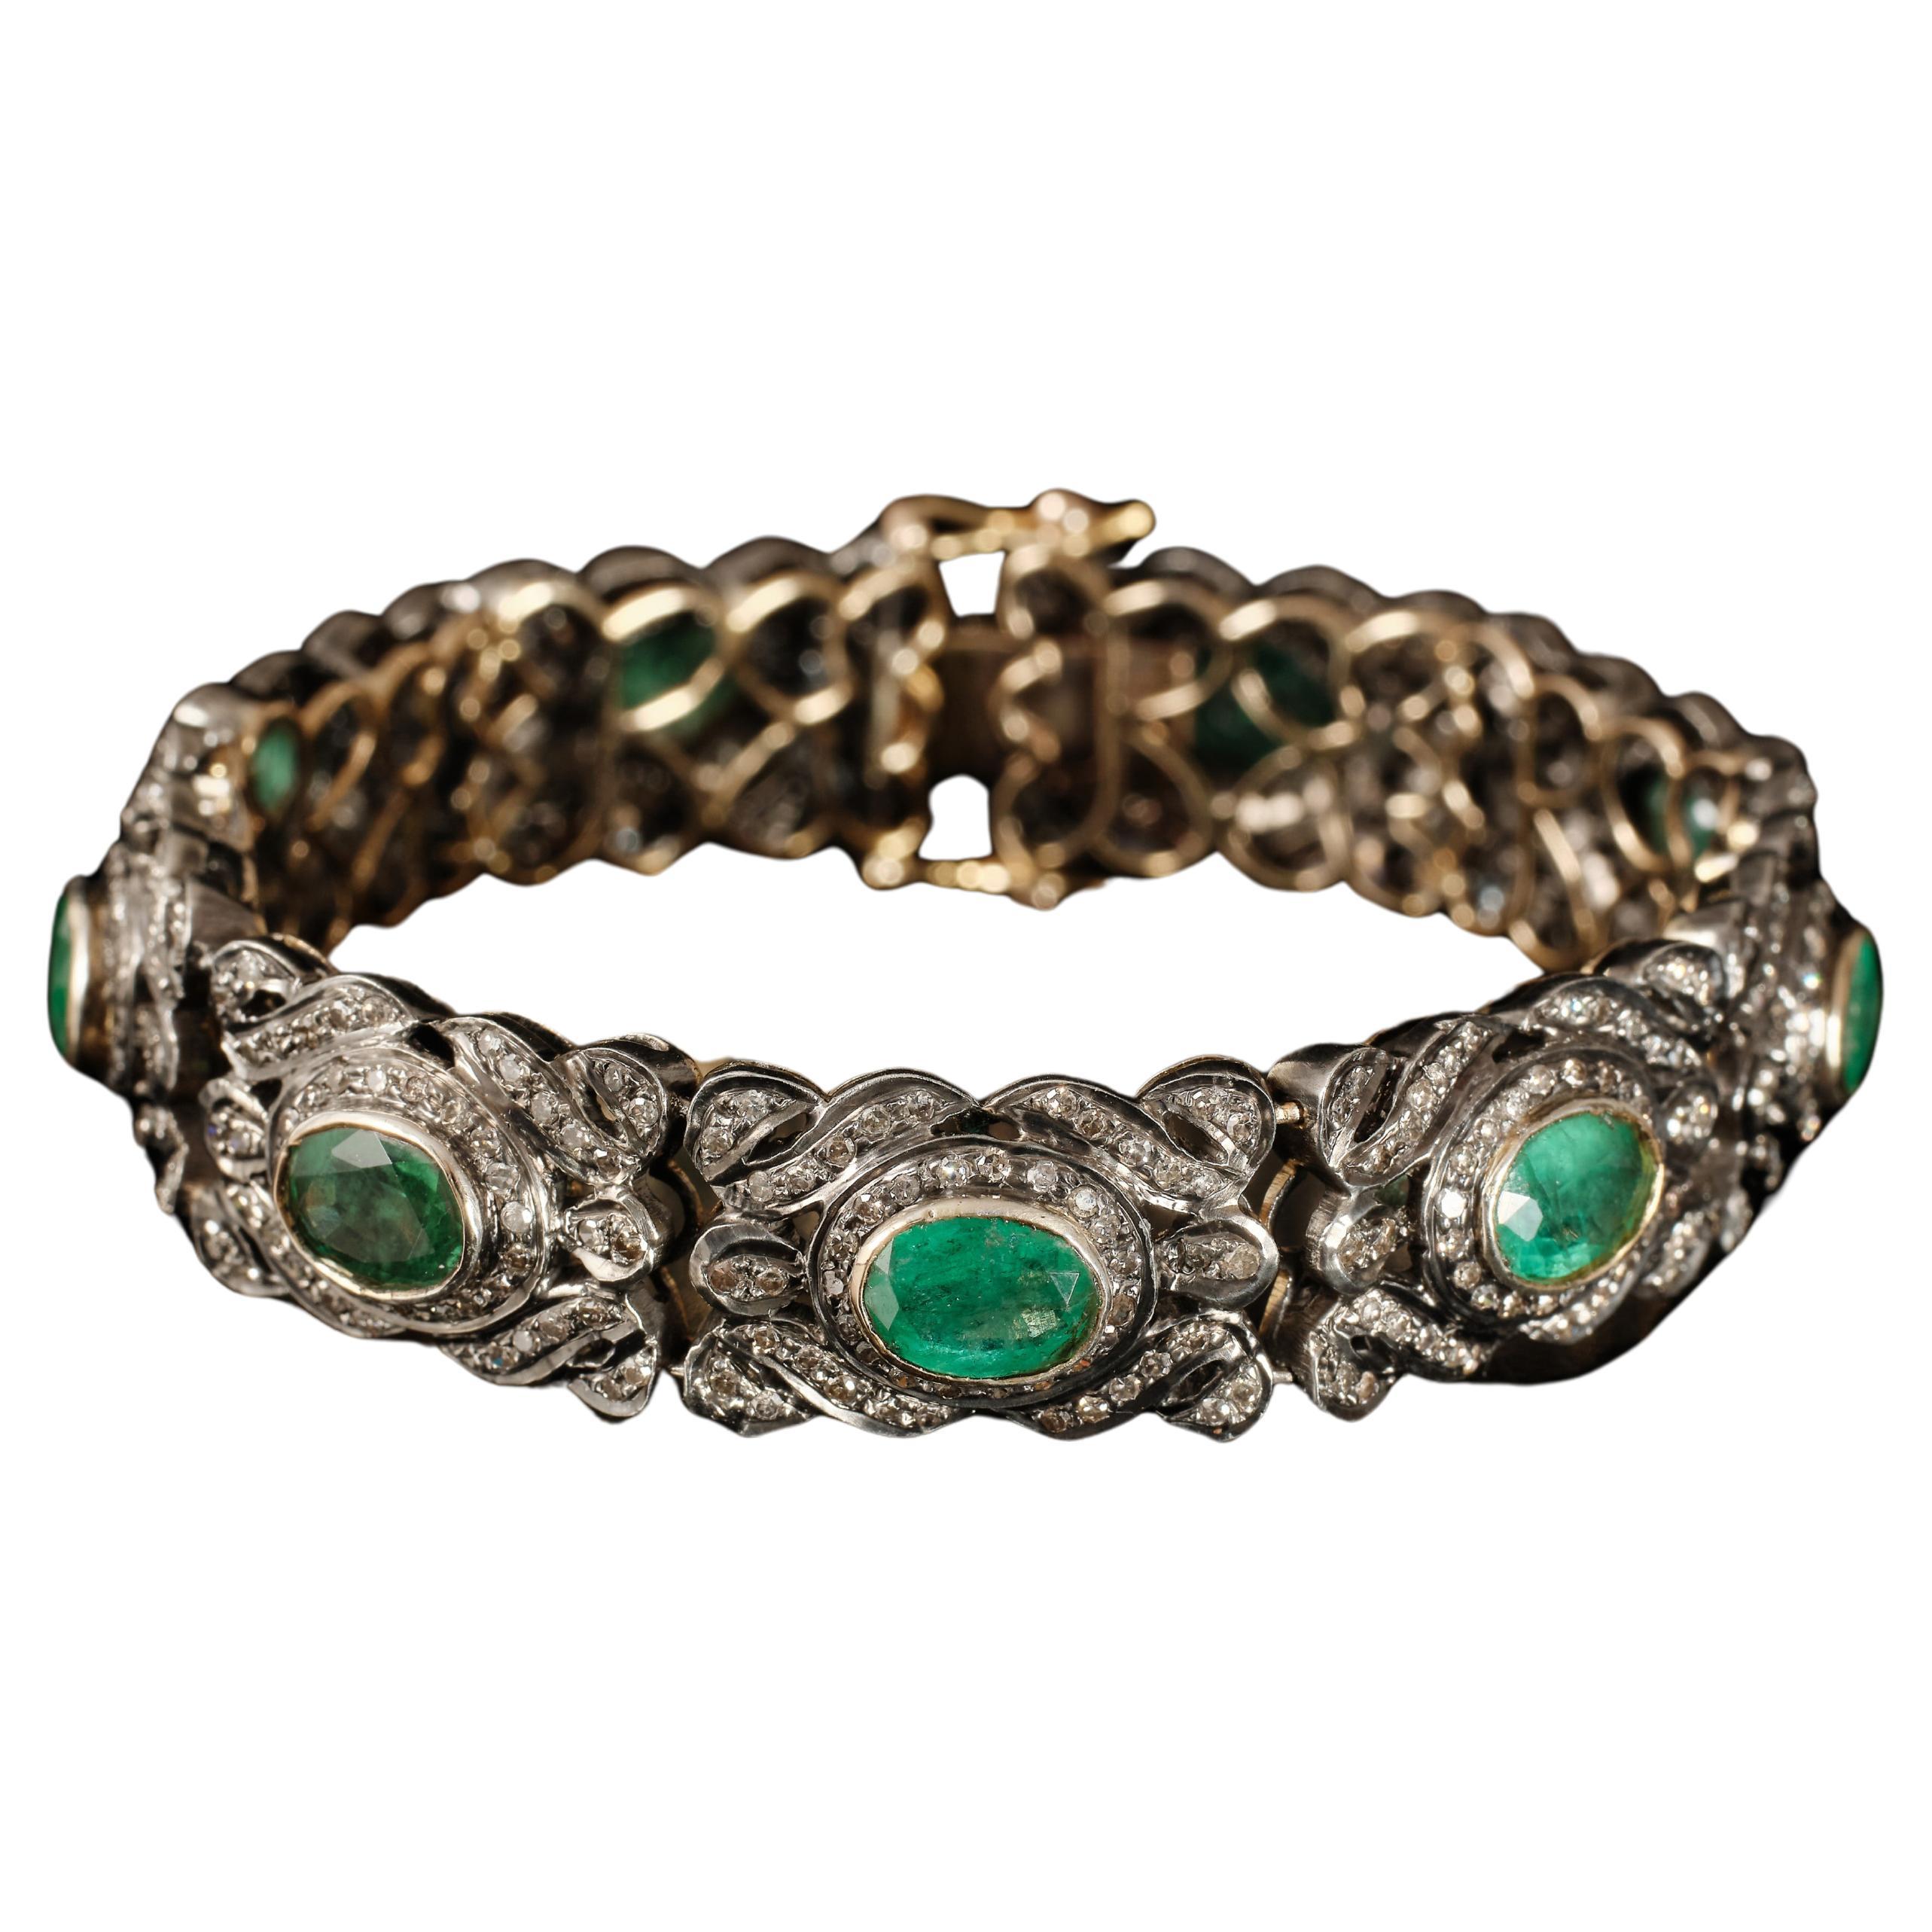 Antique old world belle époque emerald and diamond bracelet